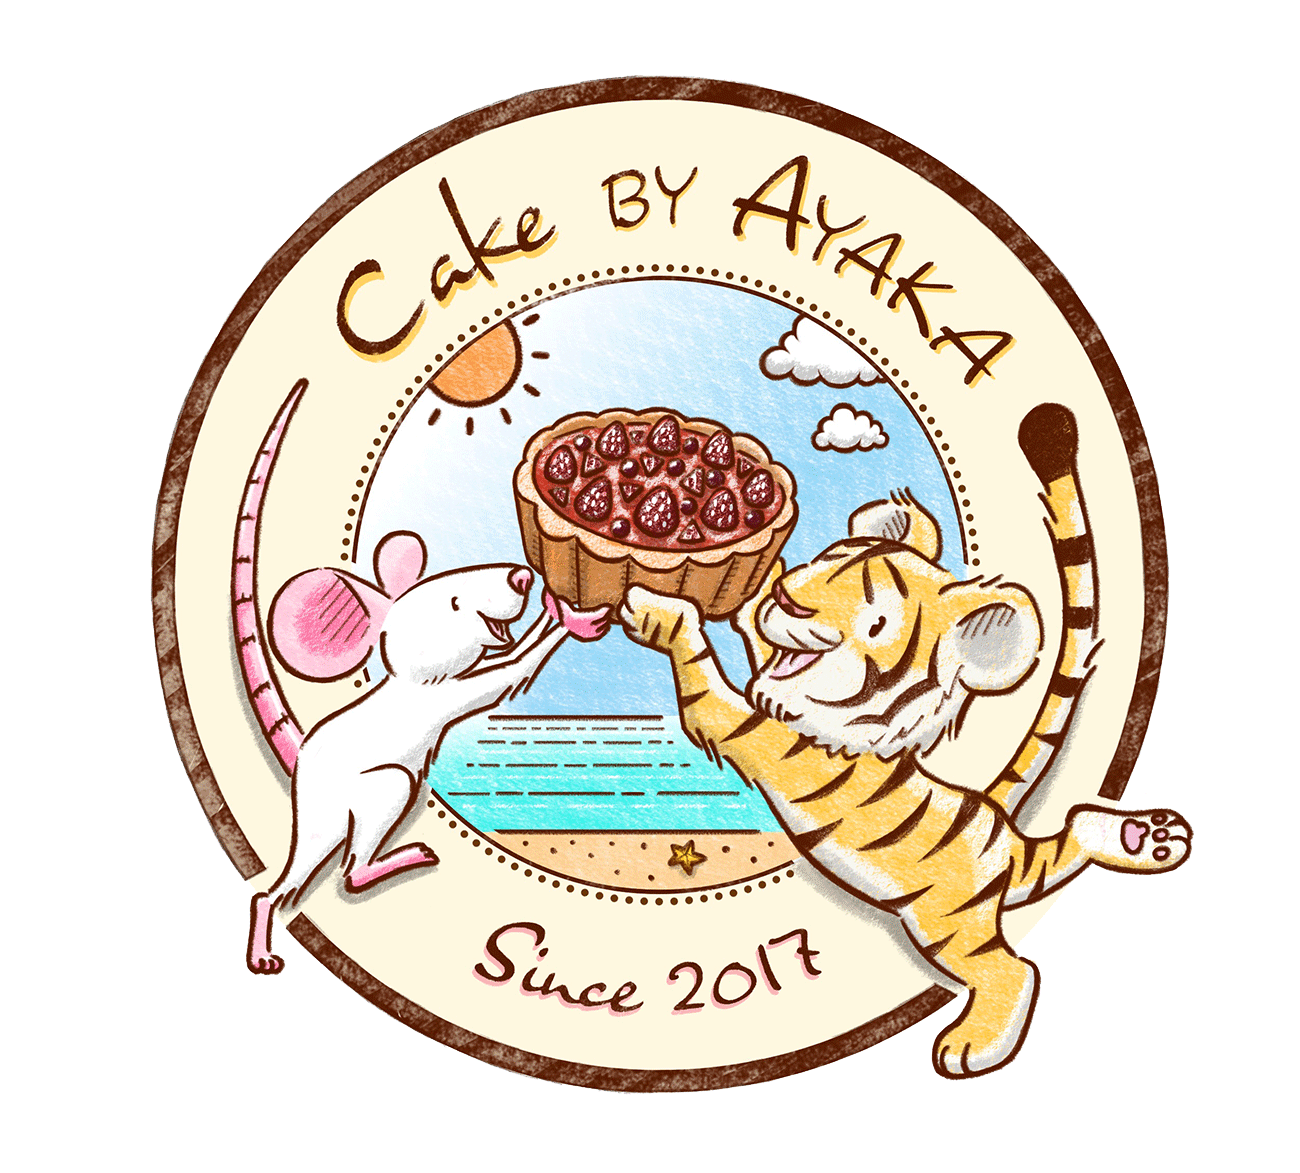 Cake by Ayaka